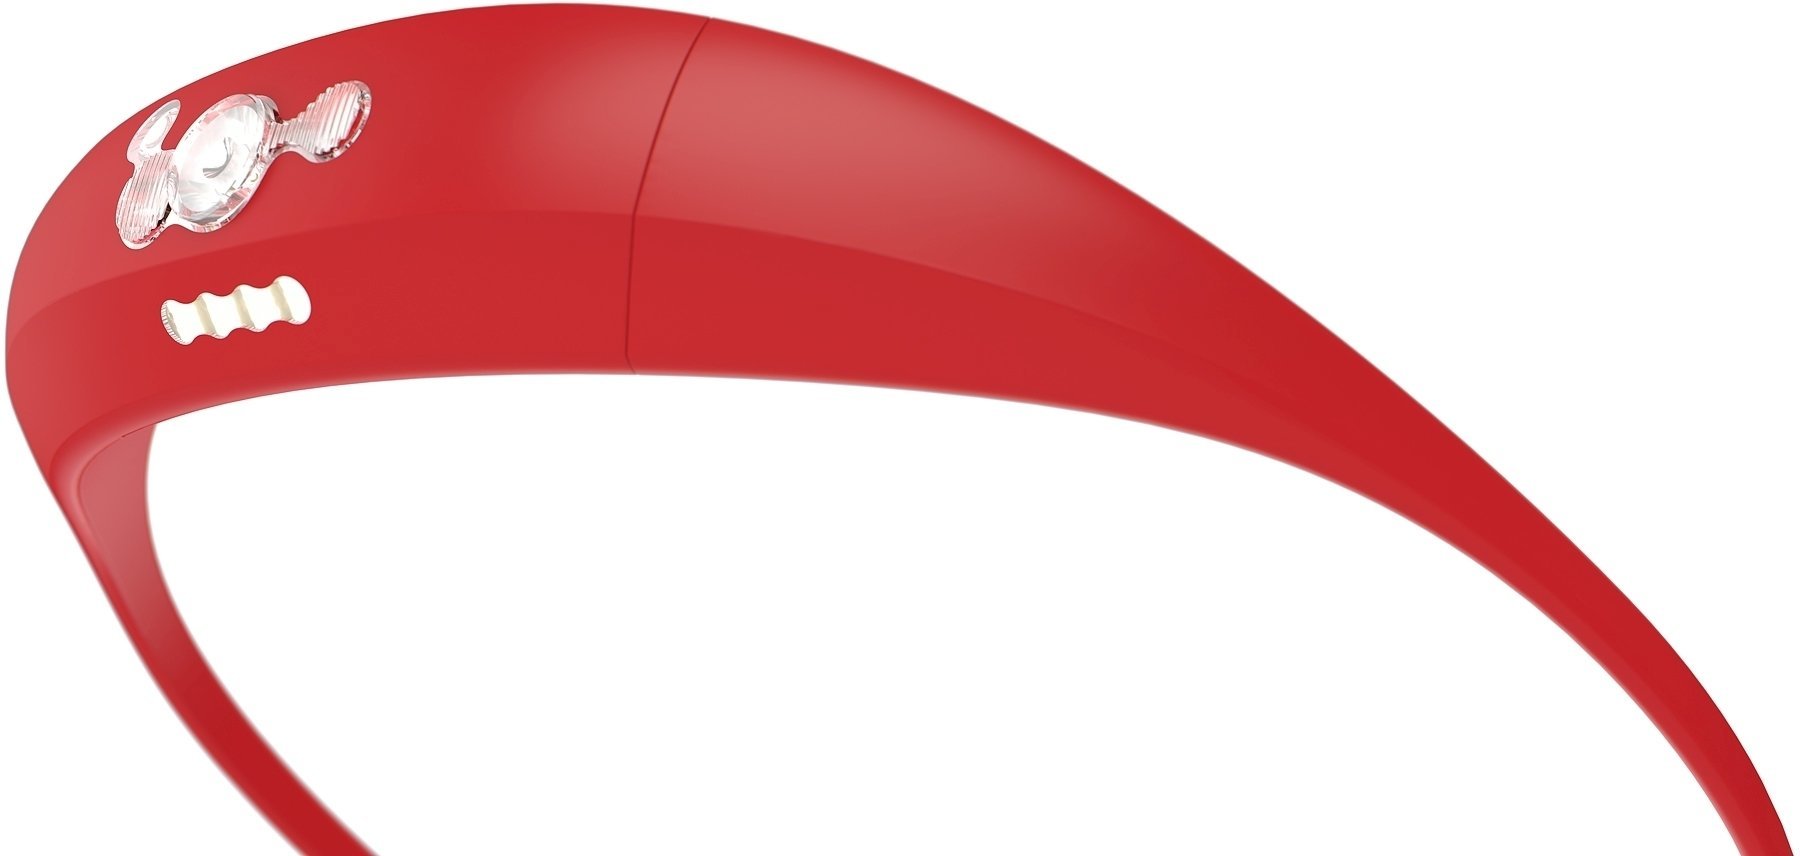 Stirnlampe batteriebetrieben Knog Bandicoot Red 100 lm Kopflampe Stirnlampe batteriebetrieben